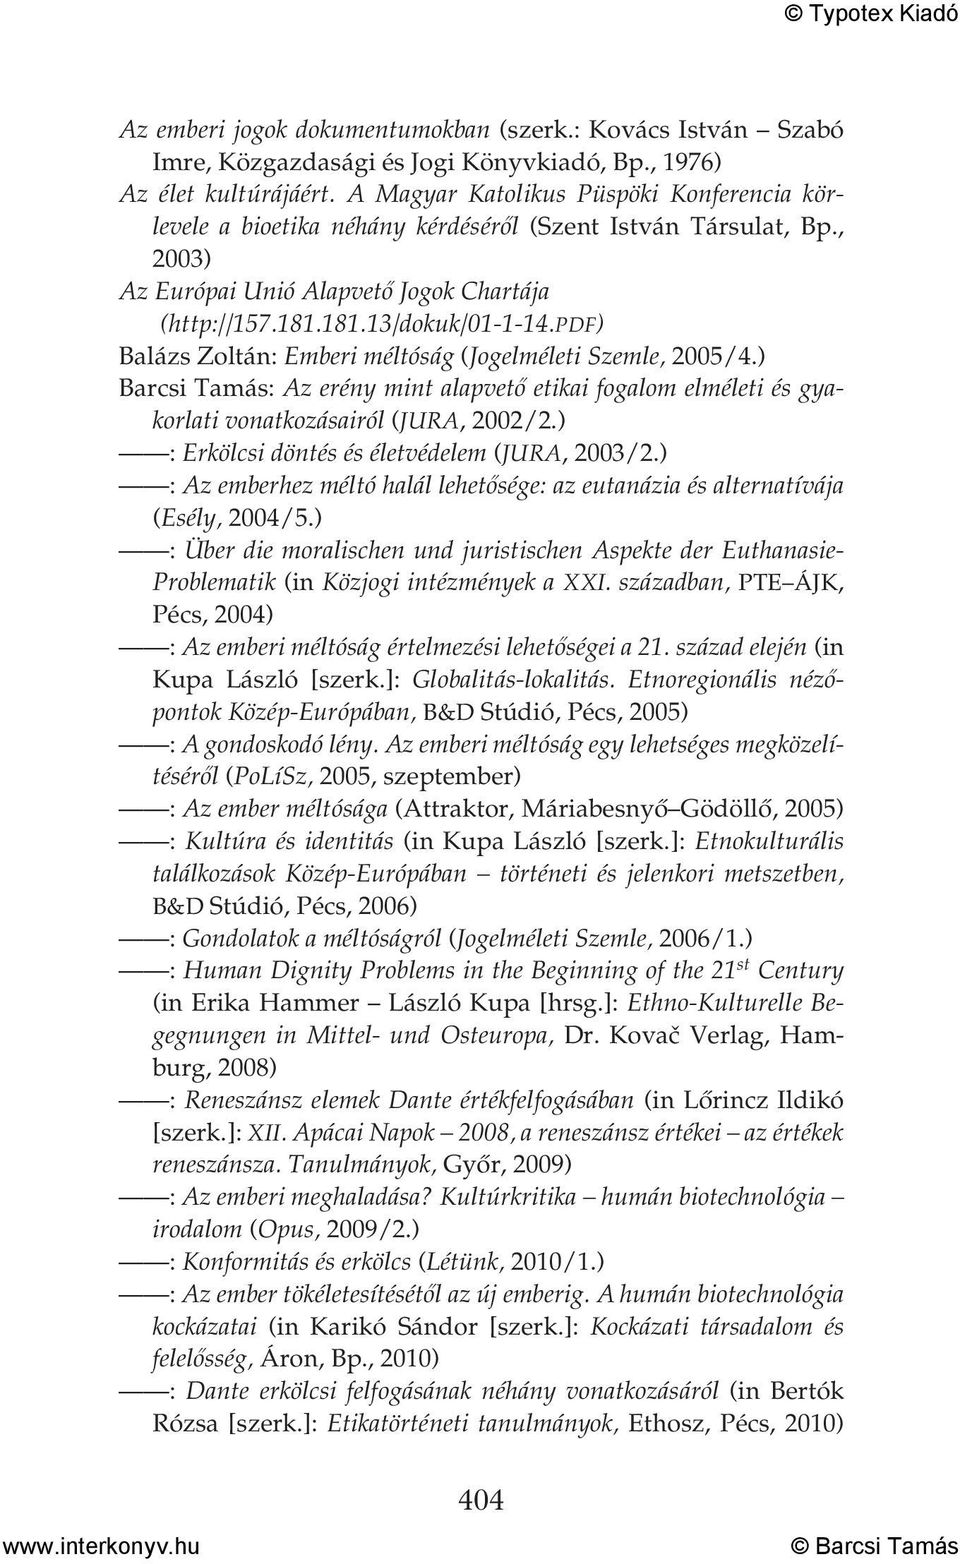 pdf) Balázs Zoltán: Emberi méltóság (Jogelméleti Szemle, 2005/4.) Barcsi Tamás: Az erény mint alapvető etikai fogalom elméleti és gyakorlati vonatkozásairól (JURA, 2002/2.